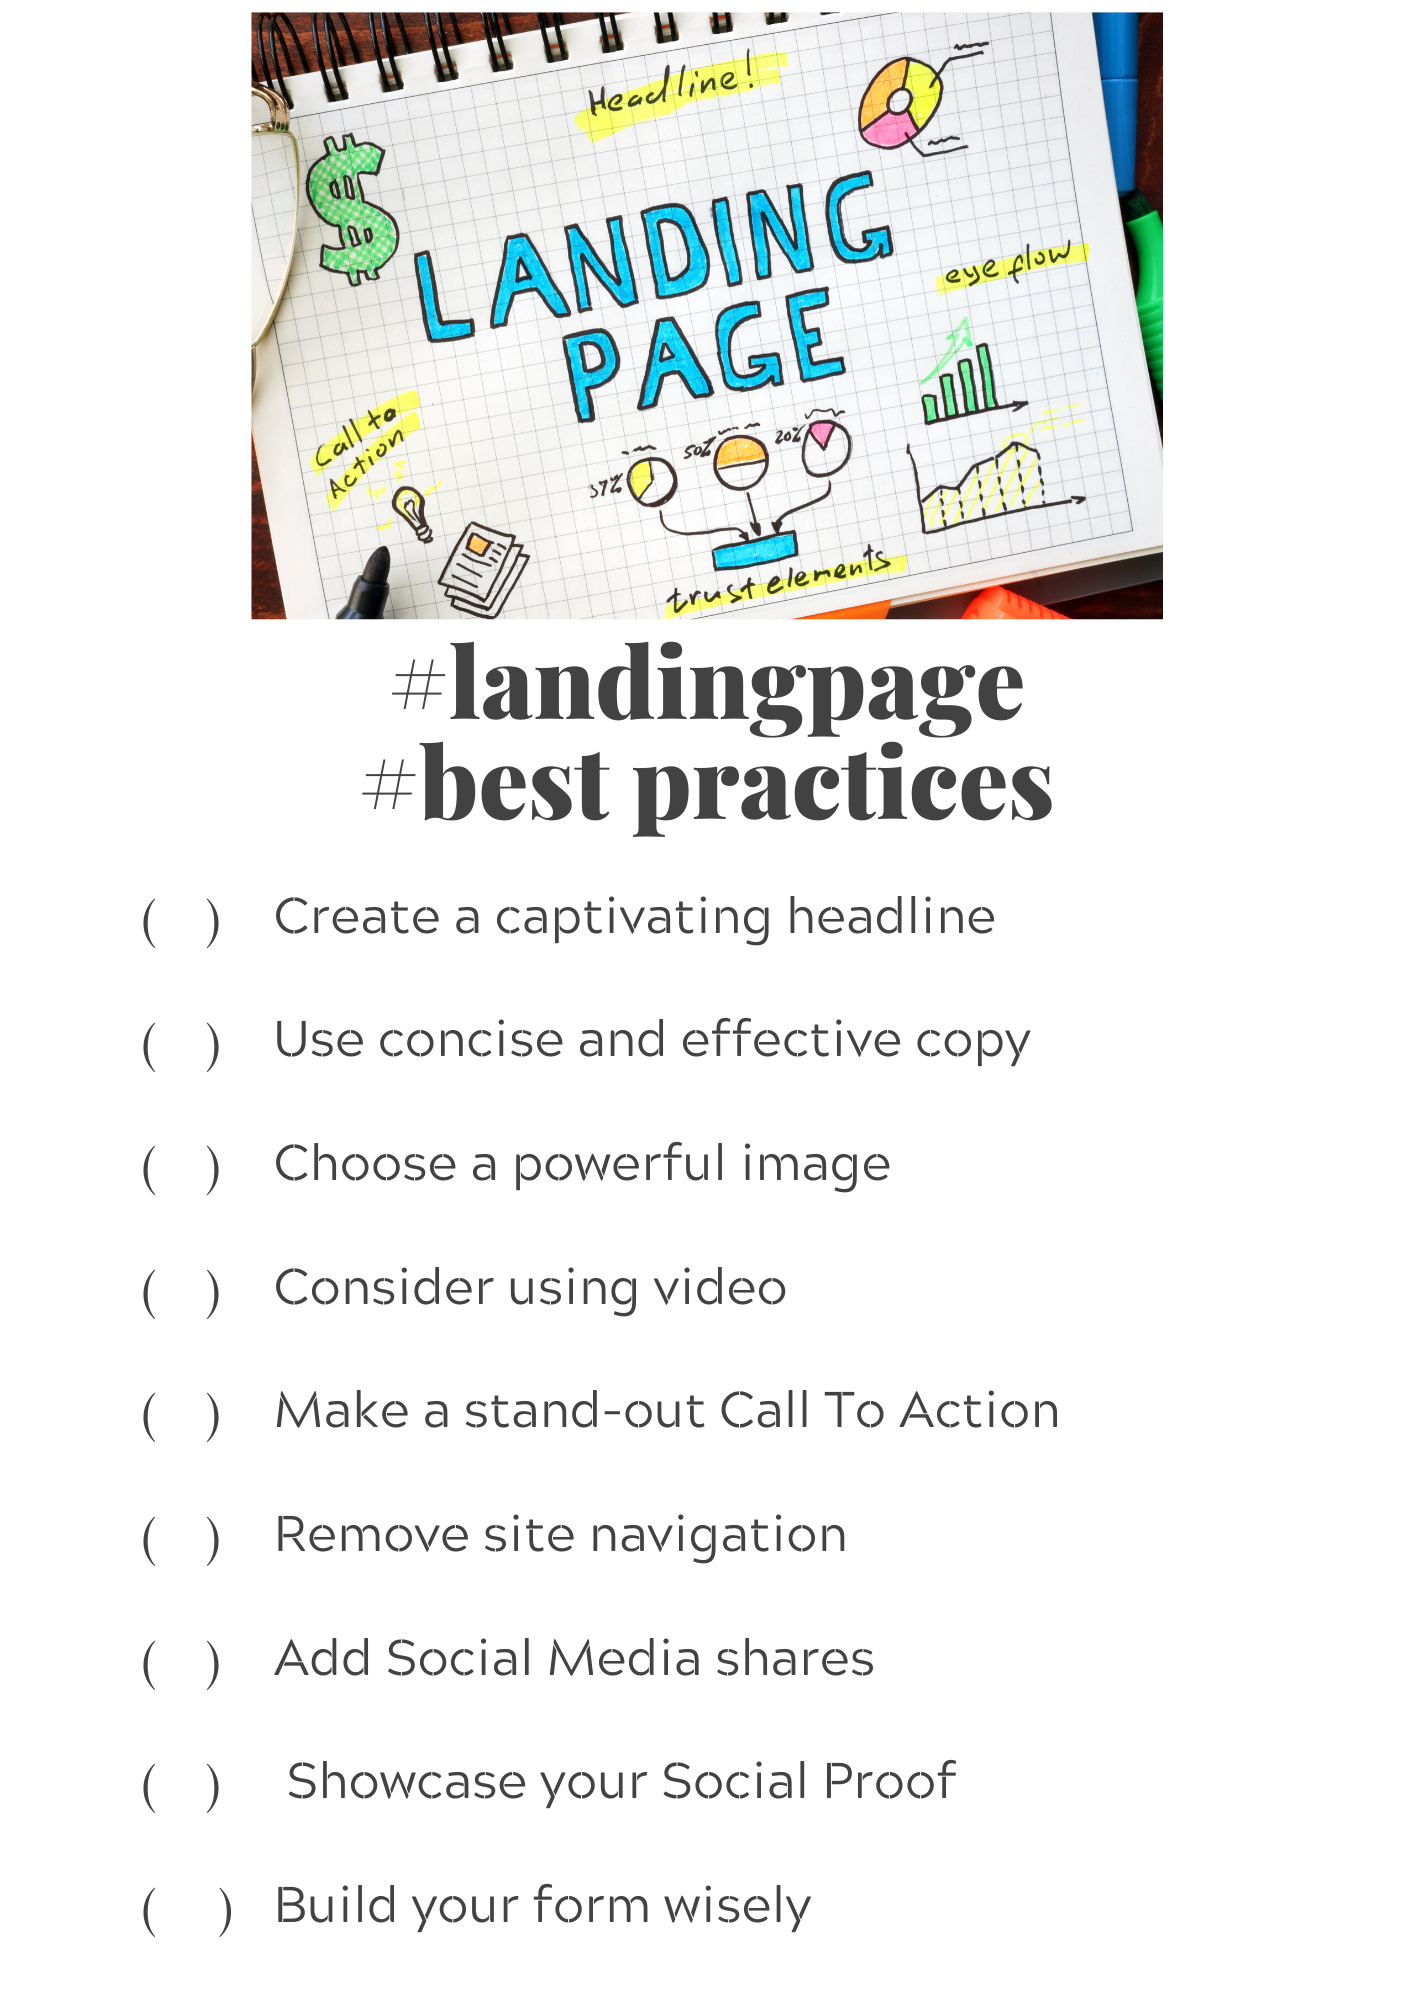 #landingpage #best practices